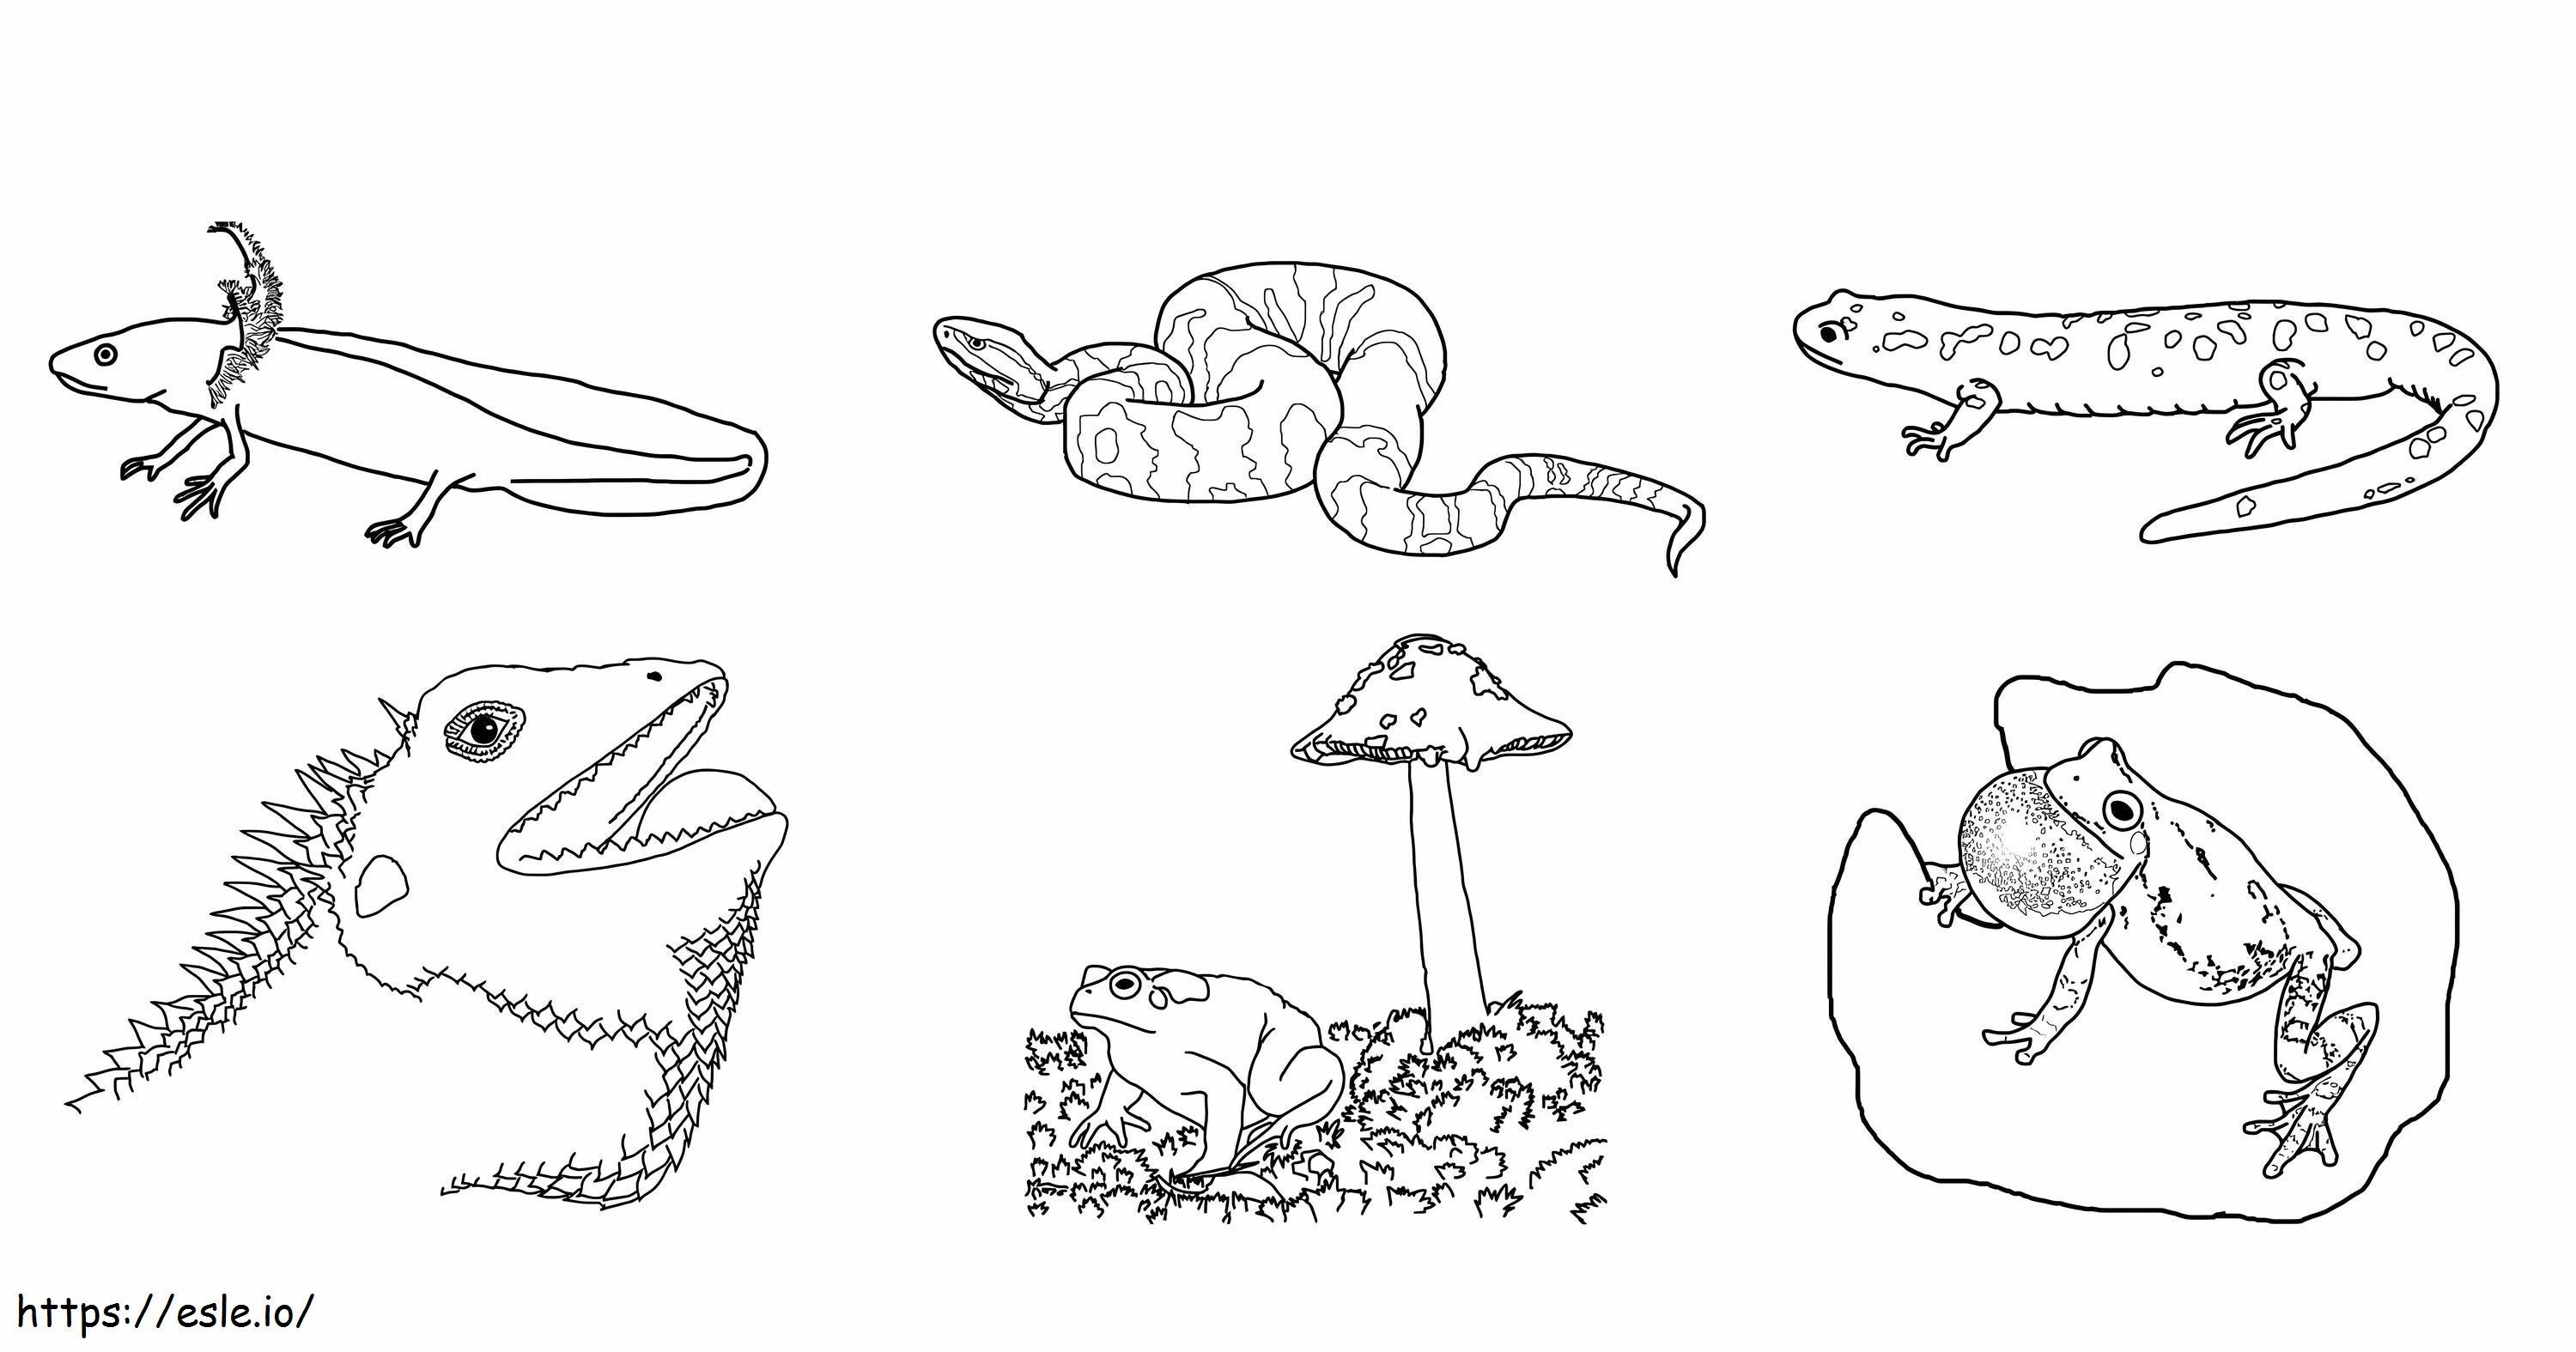 Six Amphibians coloring page